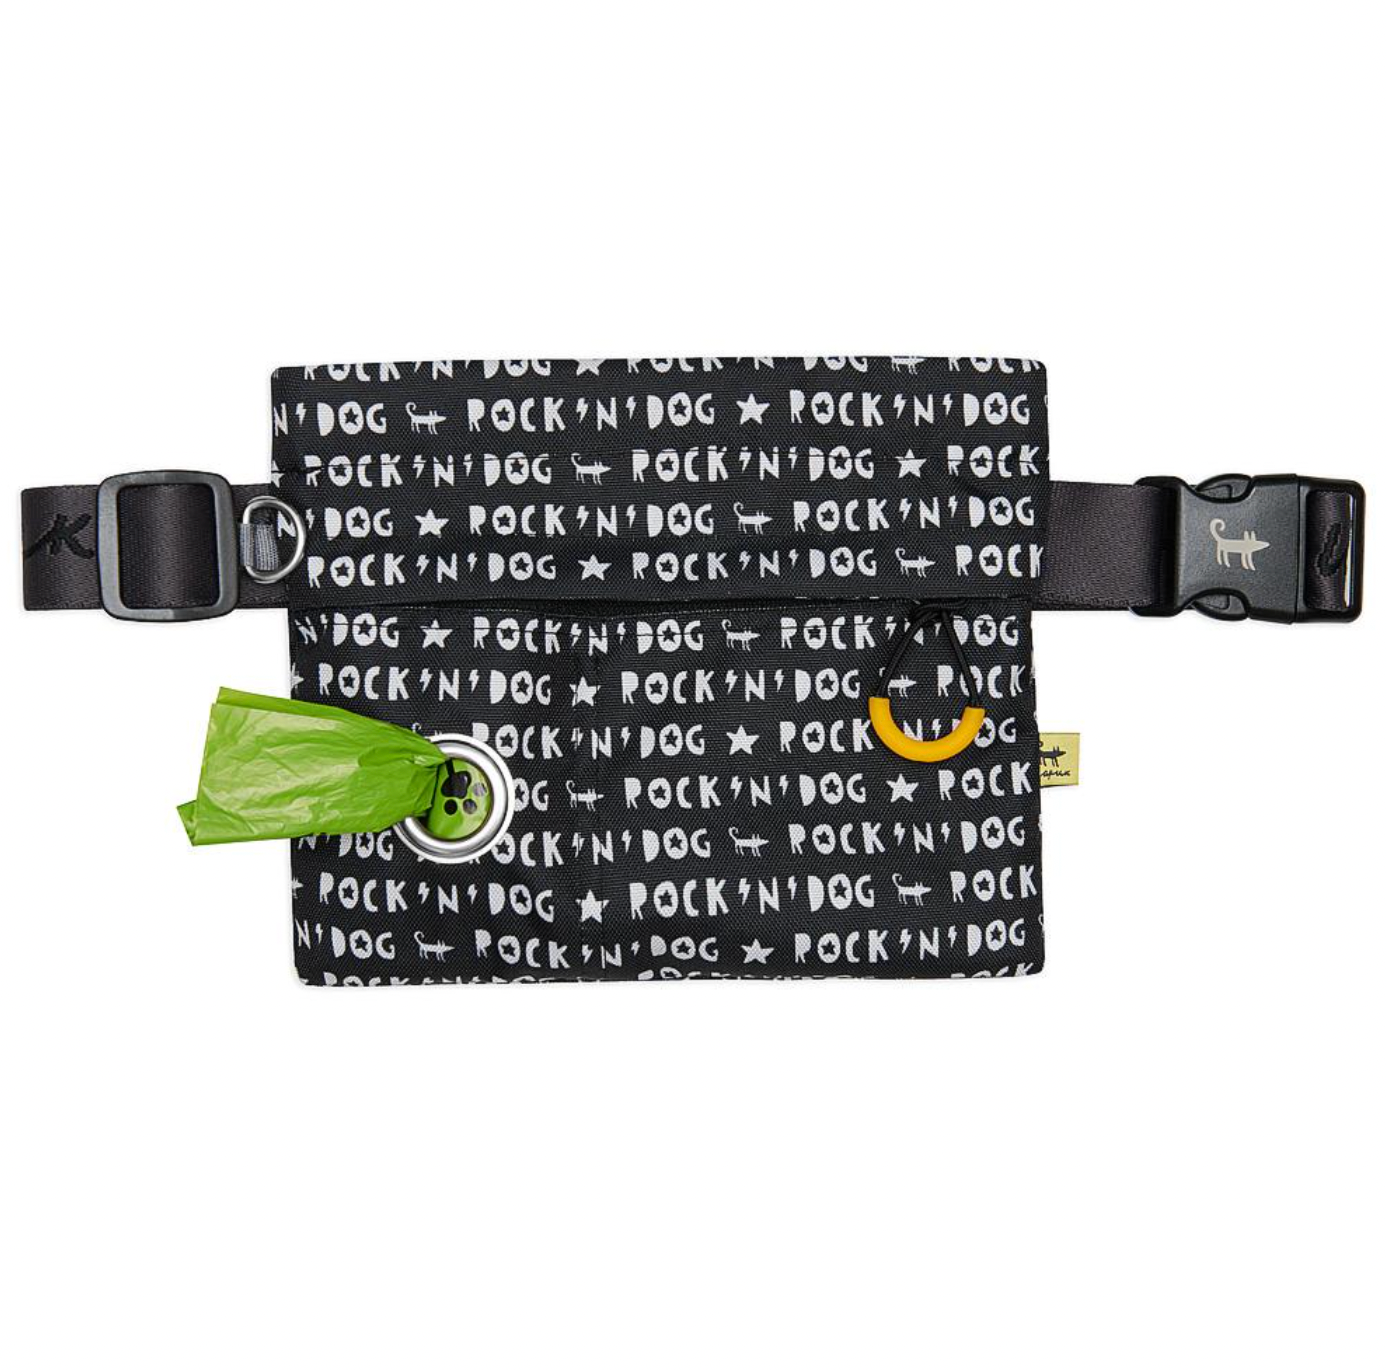 ROCK'N'DOG 2.0 Treat Clutch Bag + Poop Bags